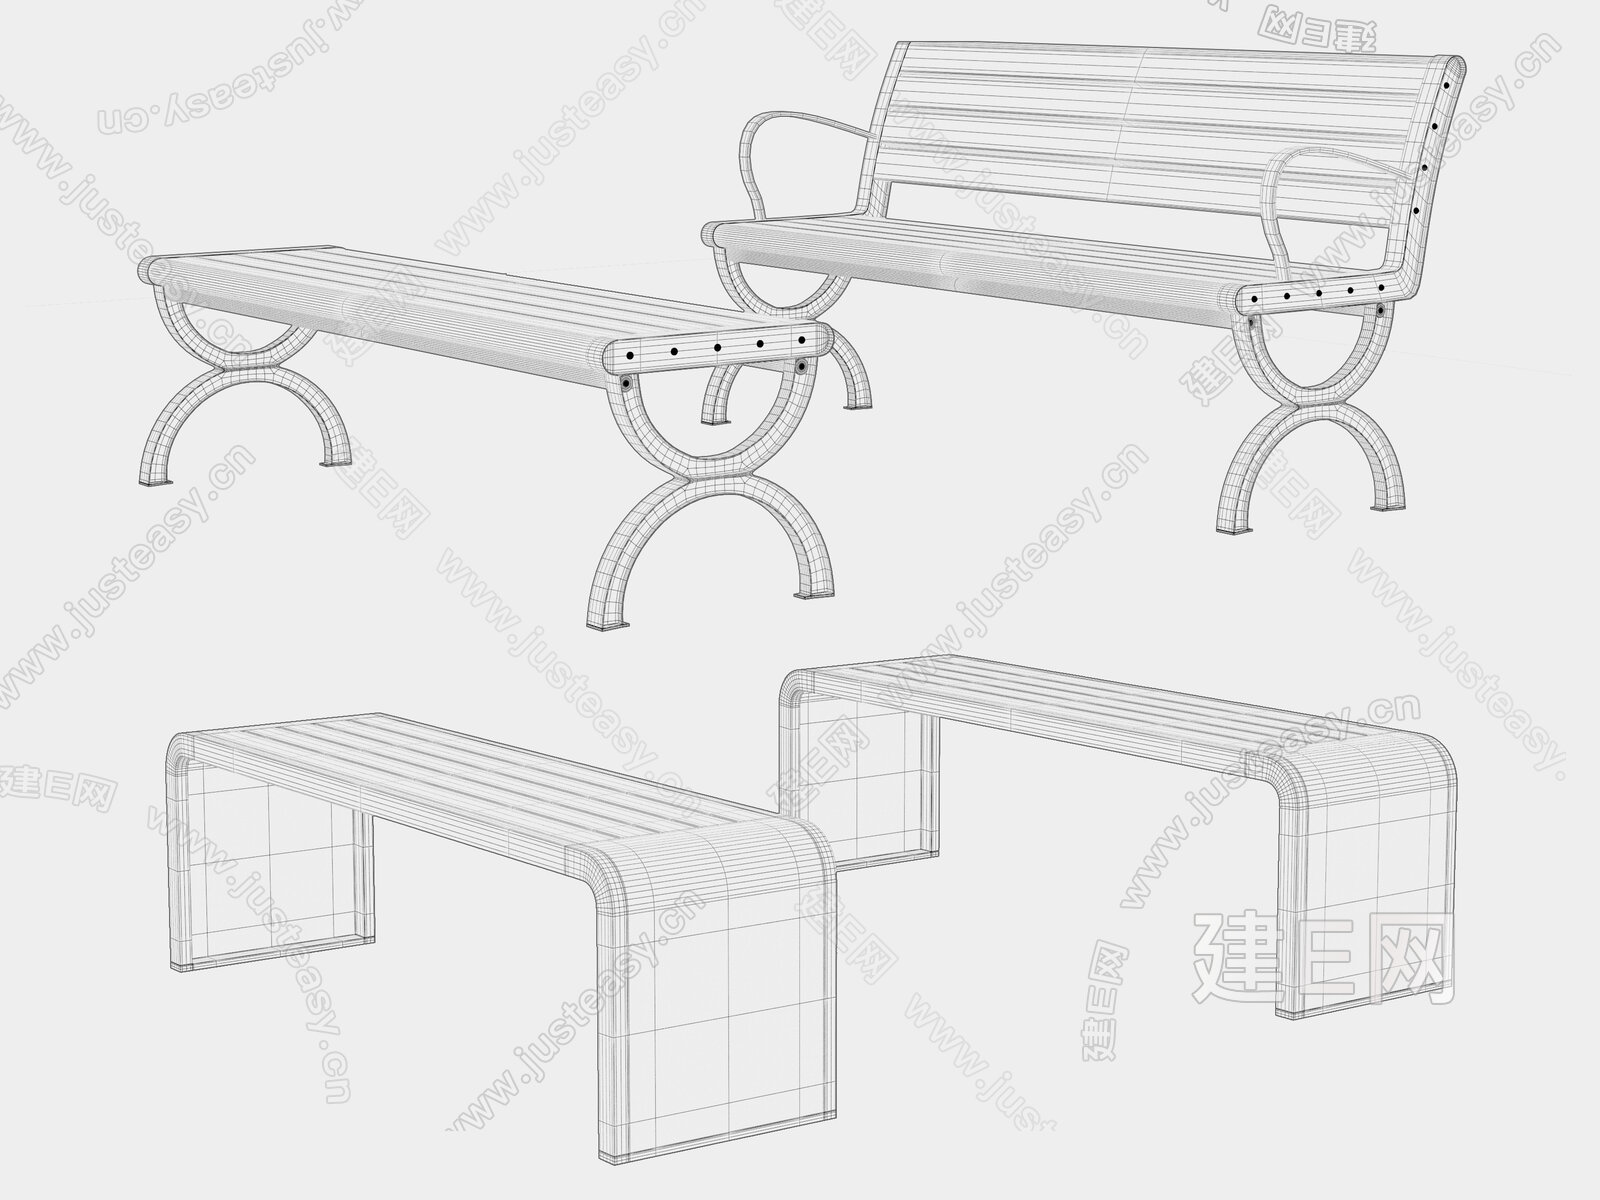 手绘pbr 低模 长椅 椅子 木椅 石板凳 凳子 石凳 铁模型-沙发模型库-3ds Max(.max)模型下载-cg模型网